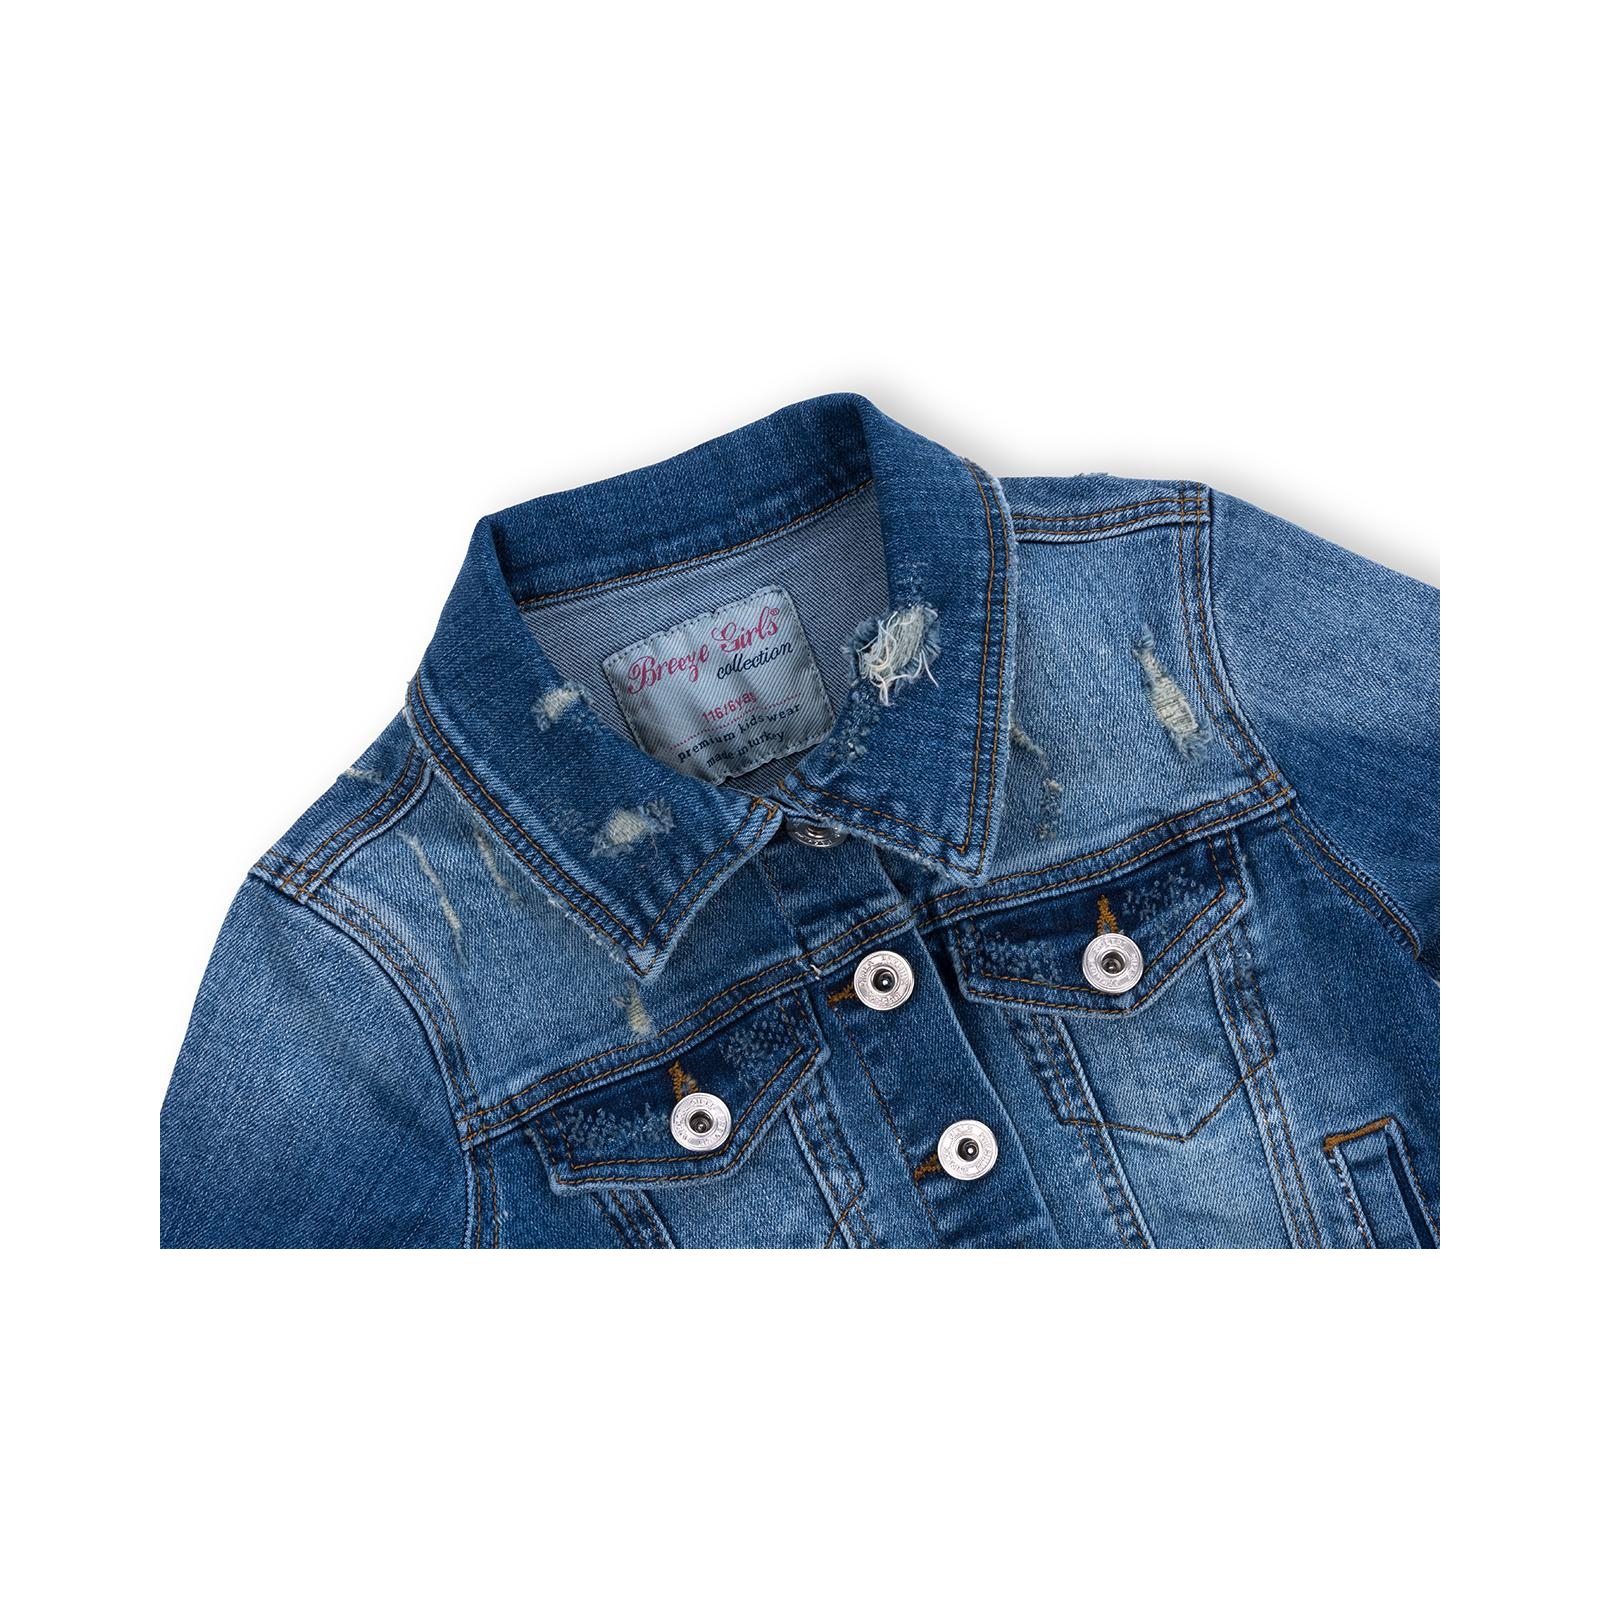 Куртка Breeze джинсовая укороченная (OZ-18801-134G-blue) изображение 3